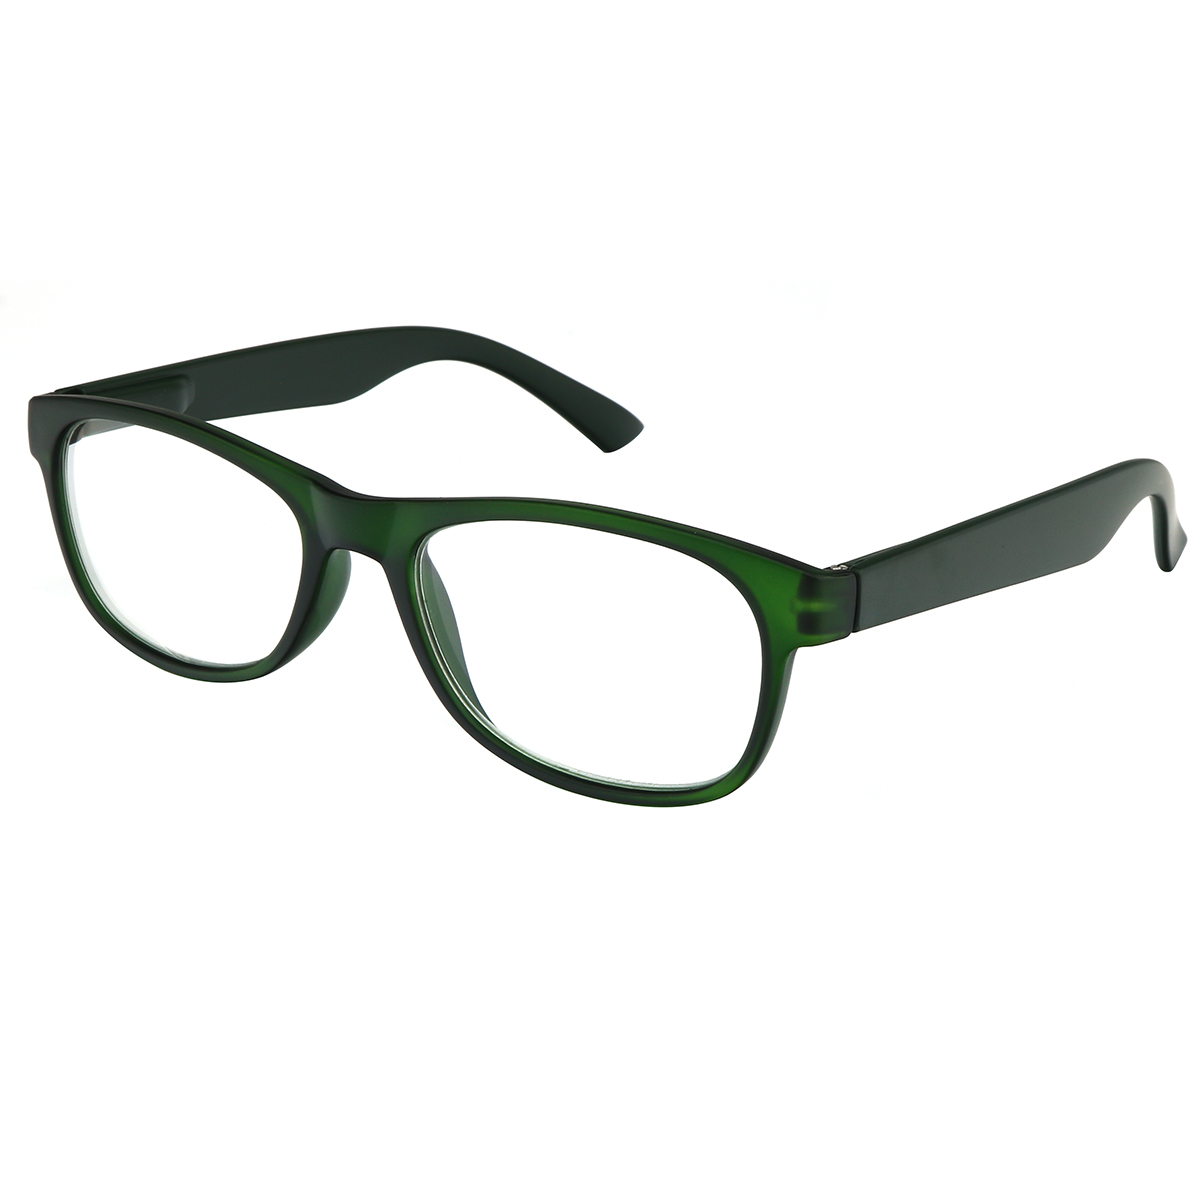 Oasis - Oval Green Reading Glasses for Men & Women